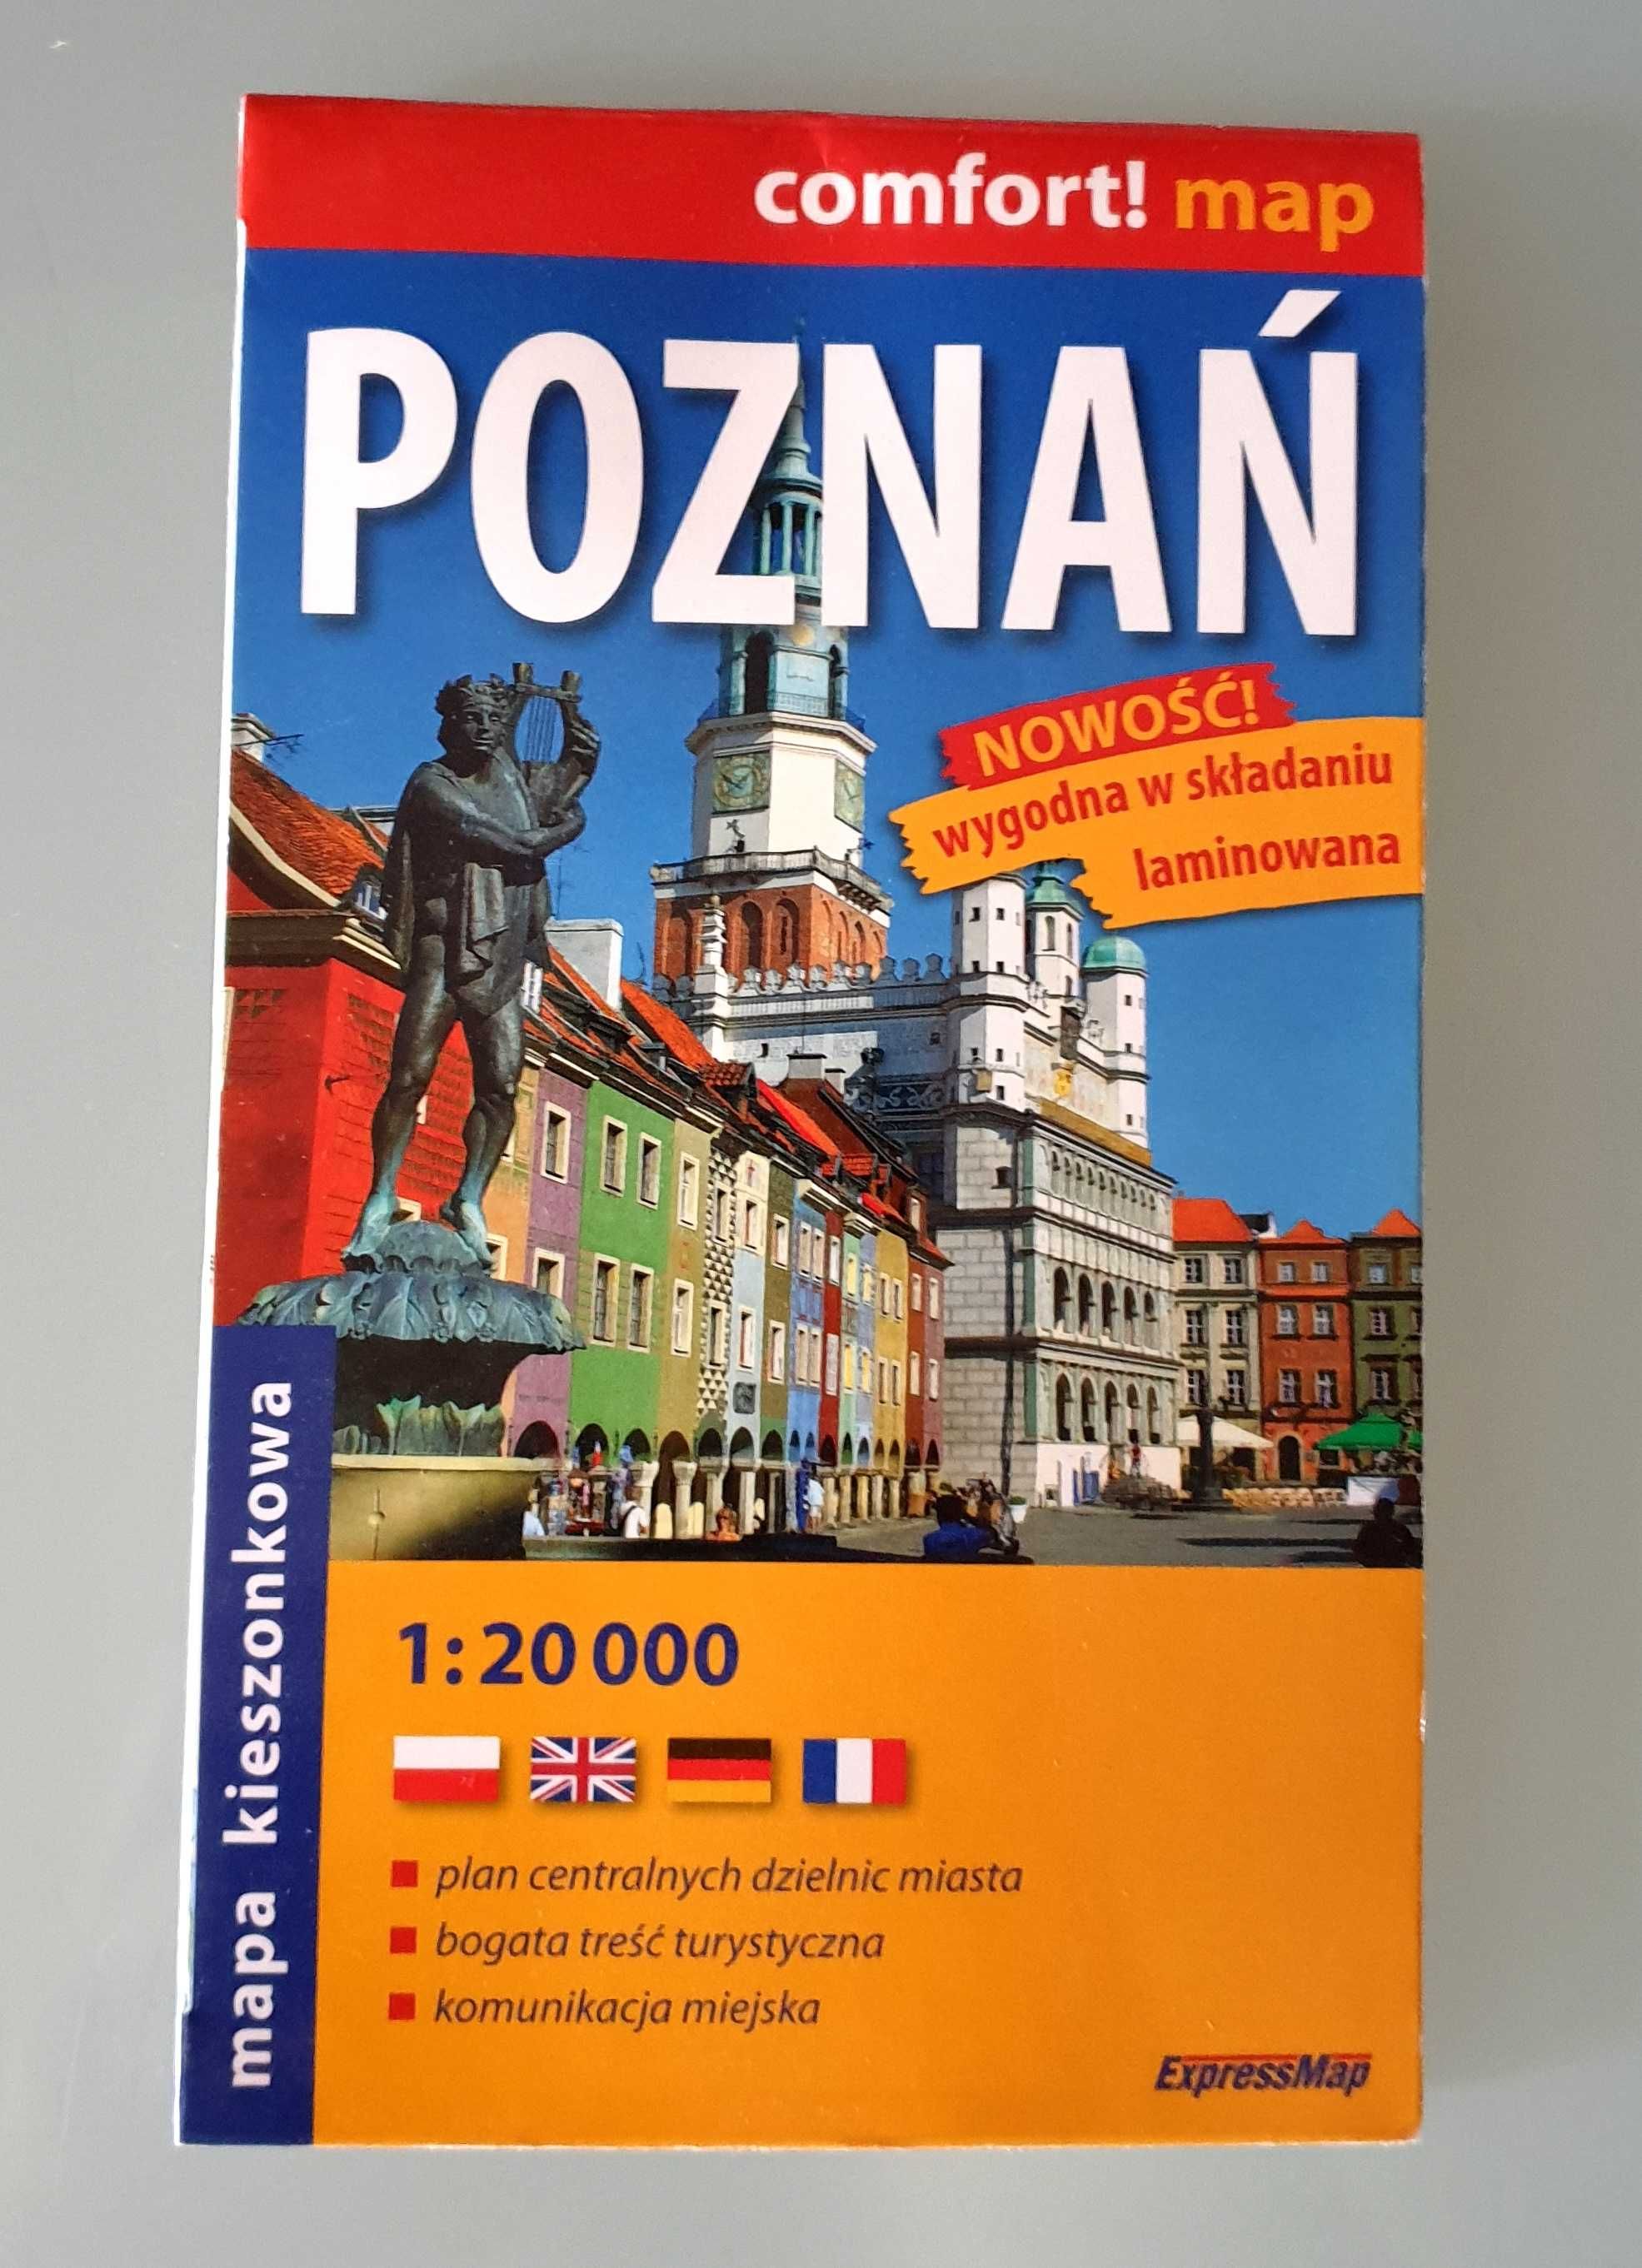 Mapa kieszonkowa, laminowana Poznań (ExpressMap 1:20 tys)